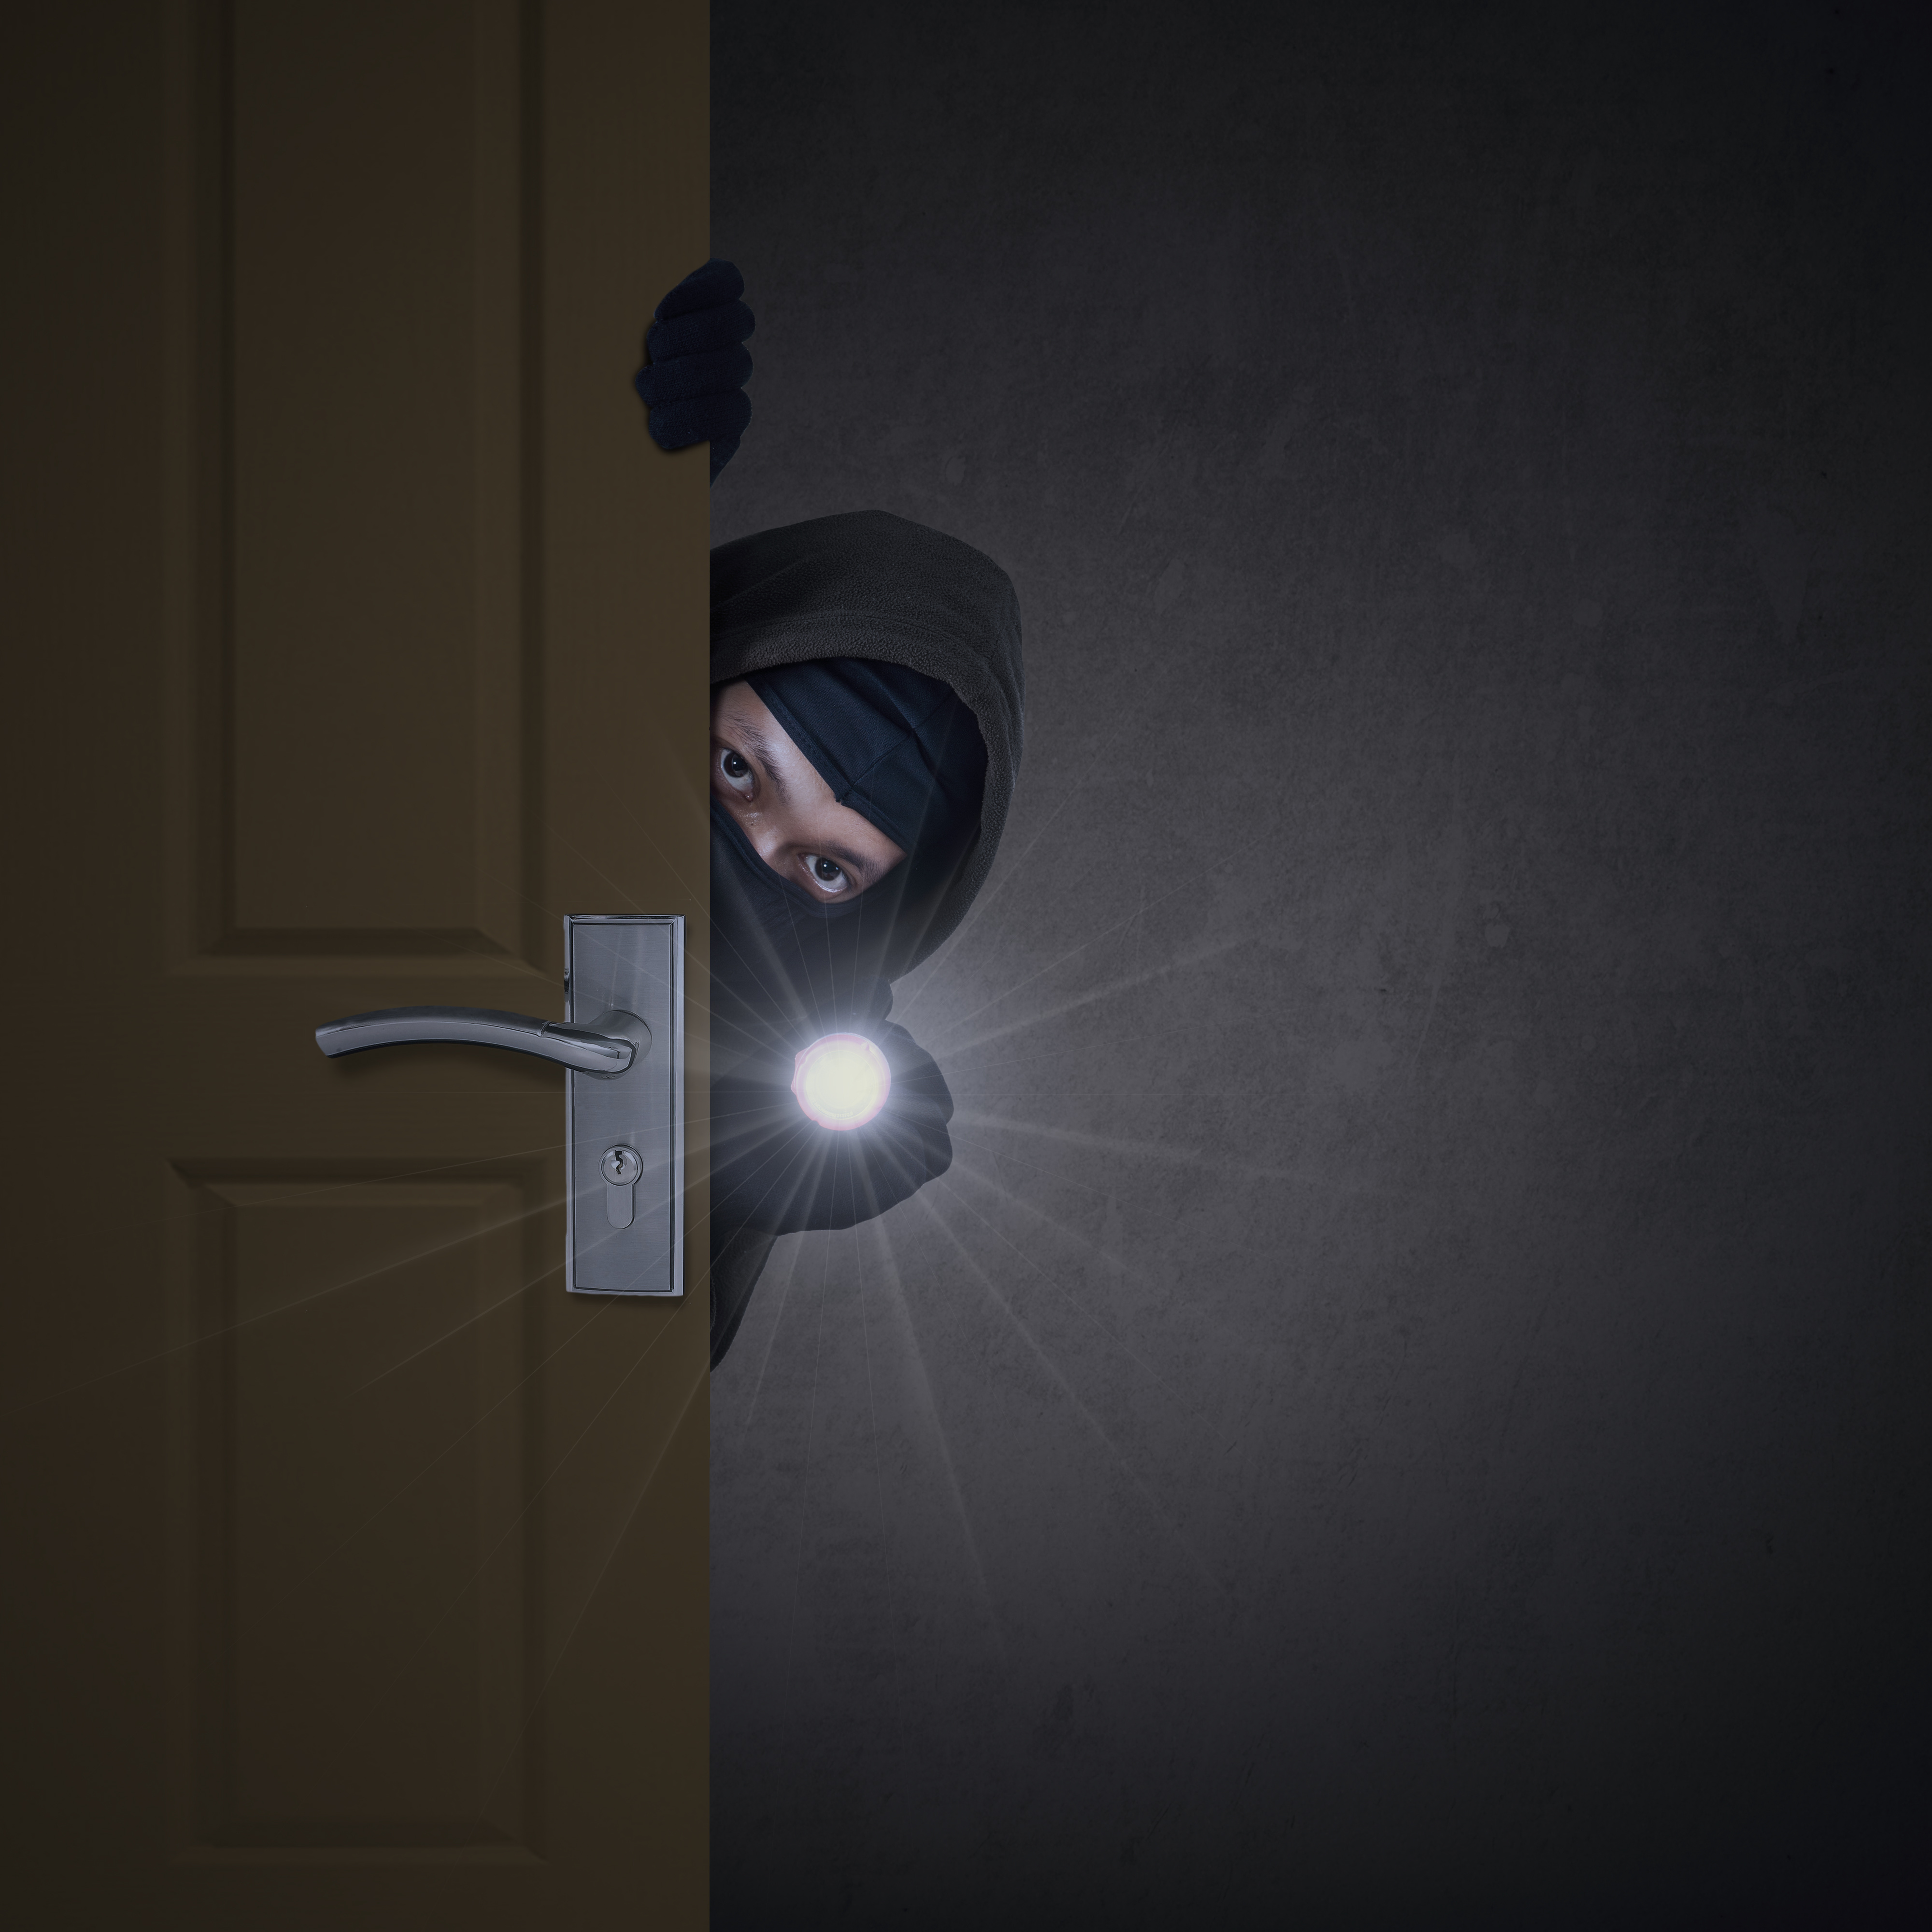 Thief sneaking through door